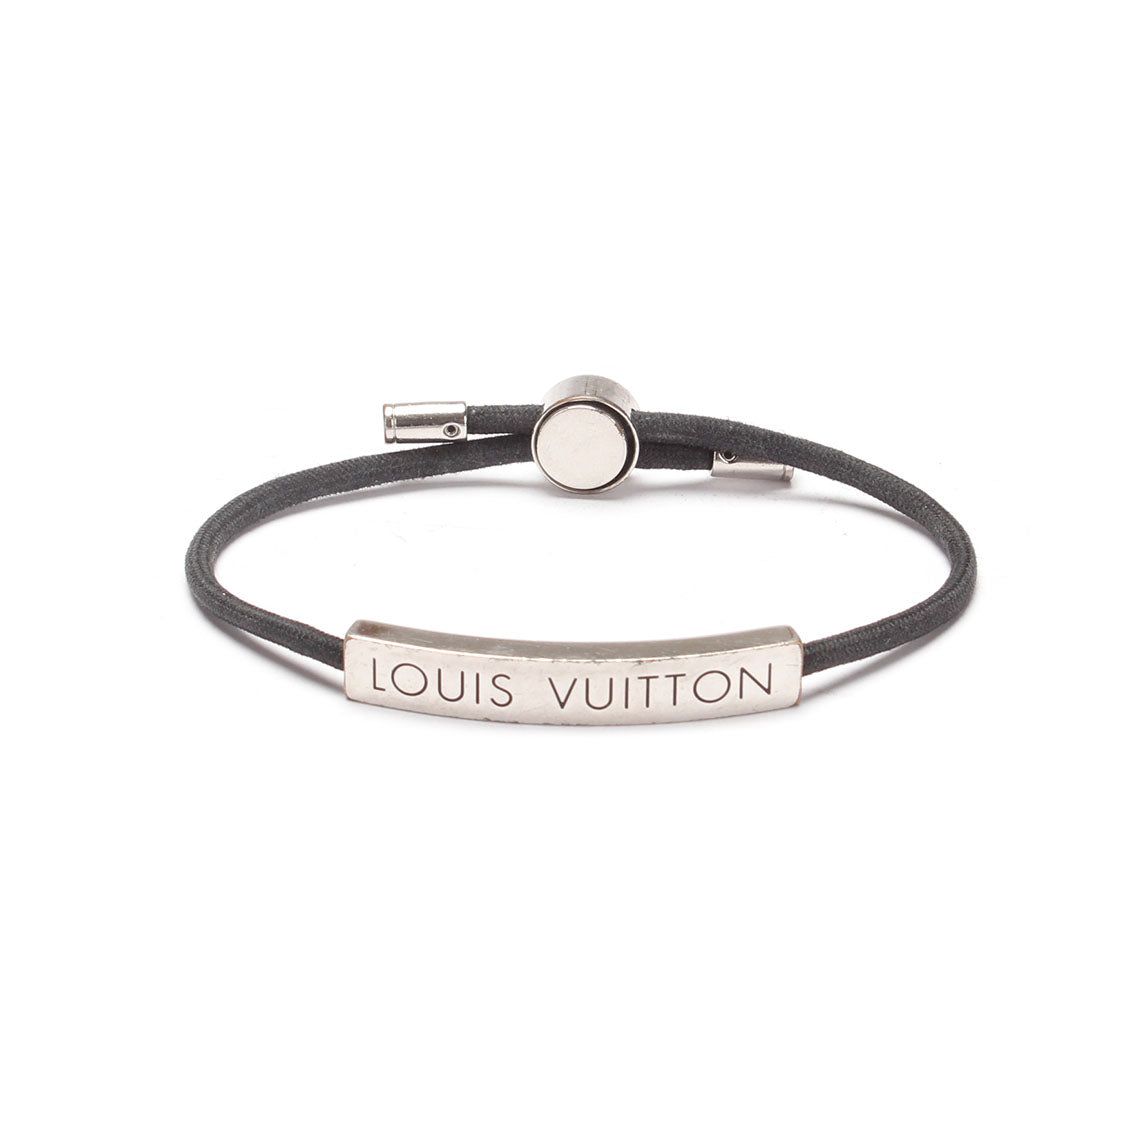 Sell Louis Vuitton Initials Bracelet - Black